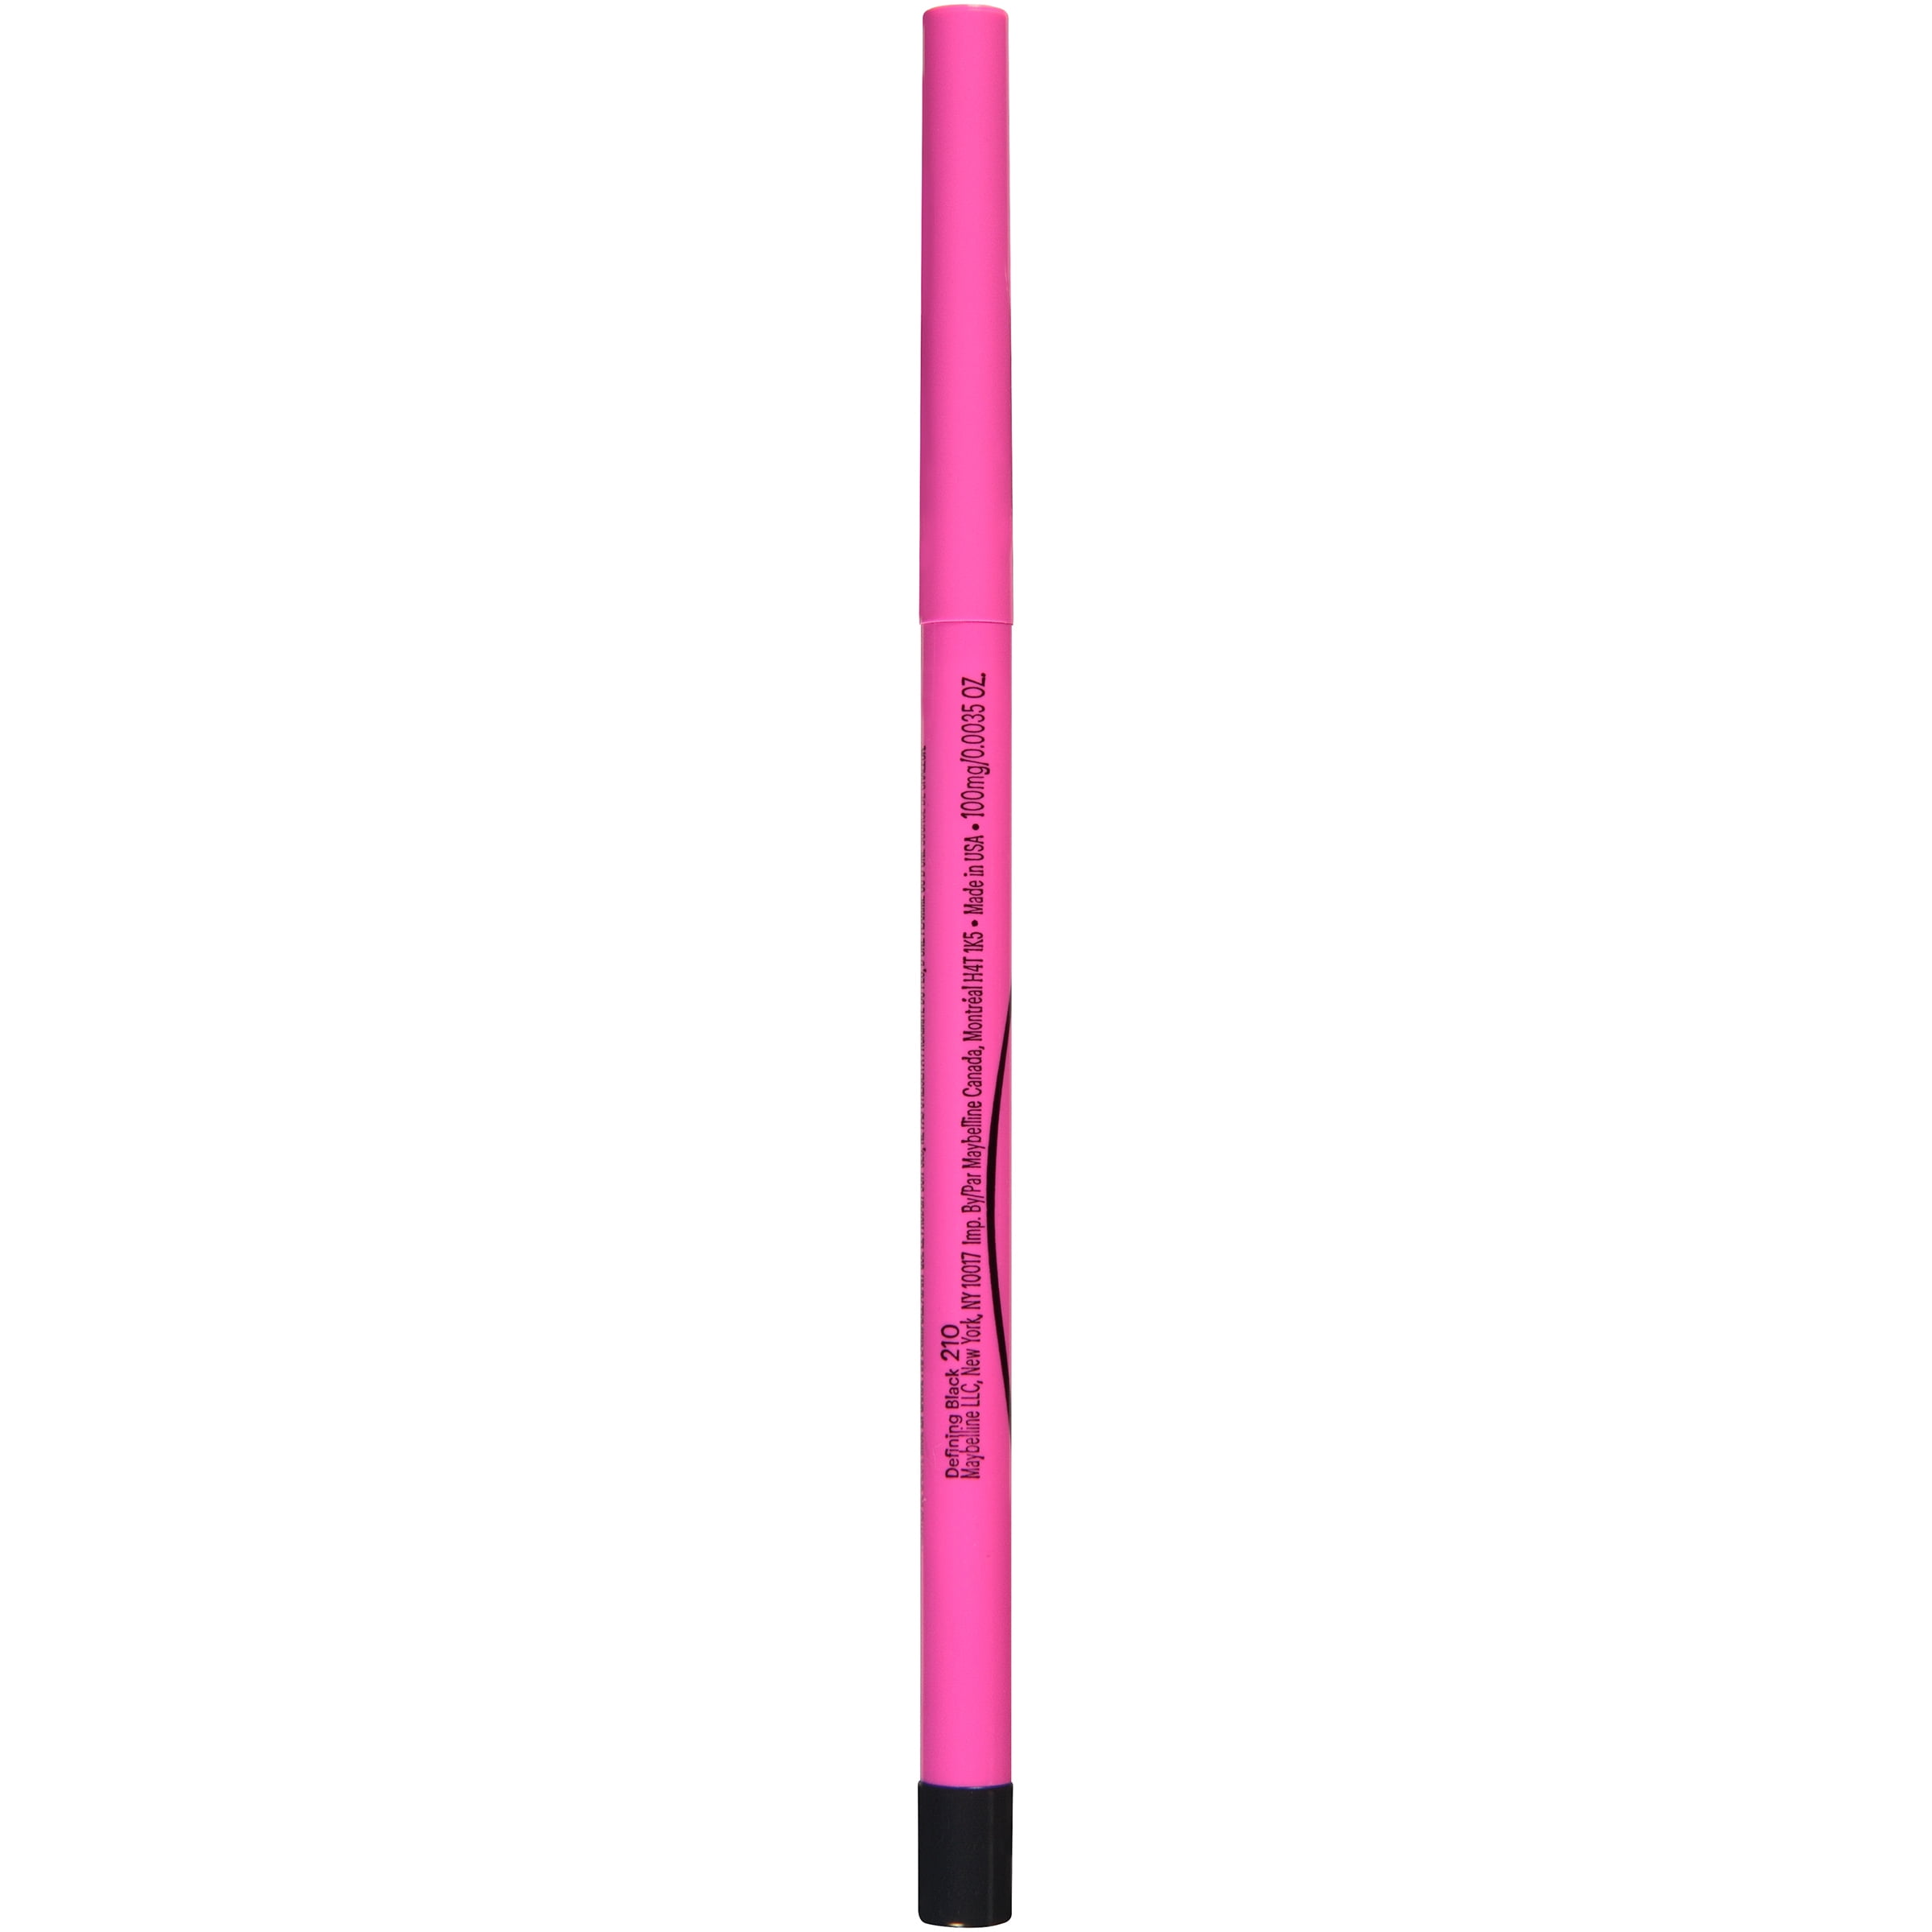 Master Skinny Eyeliner Pencil, Defining Black, 0.004 - Walmart.com